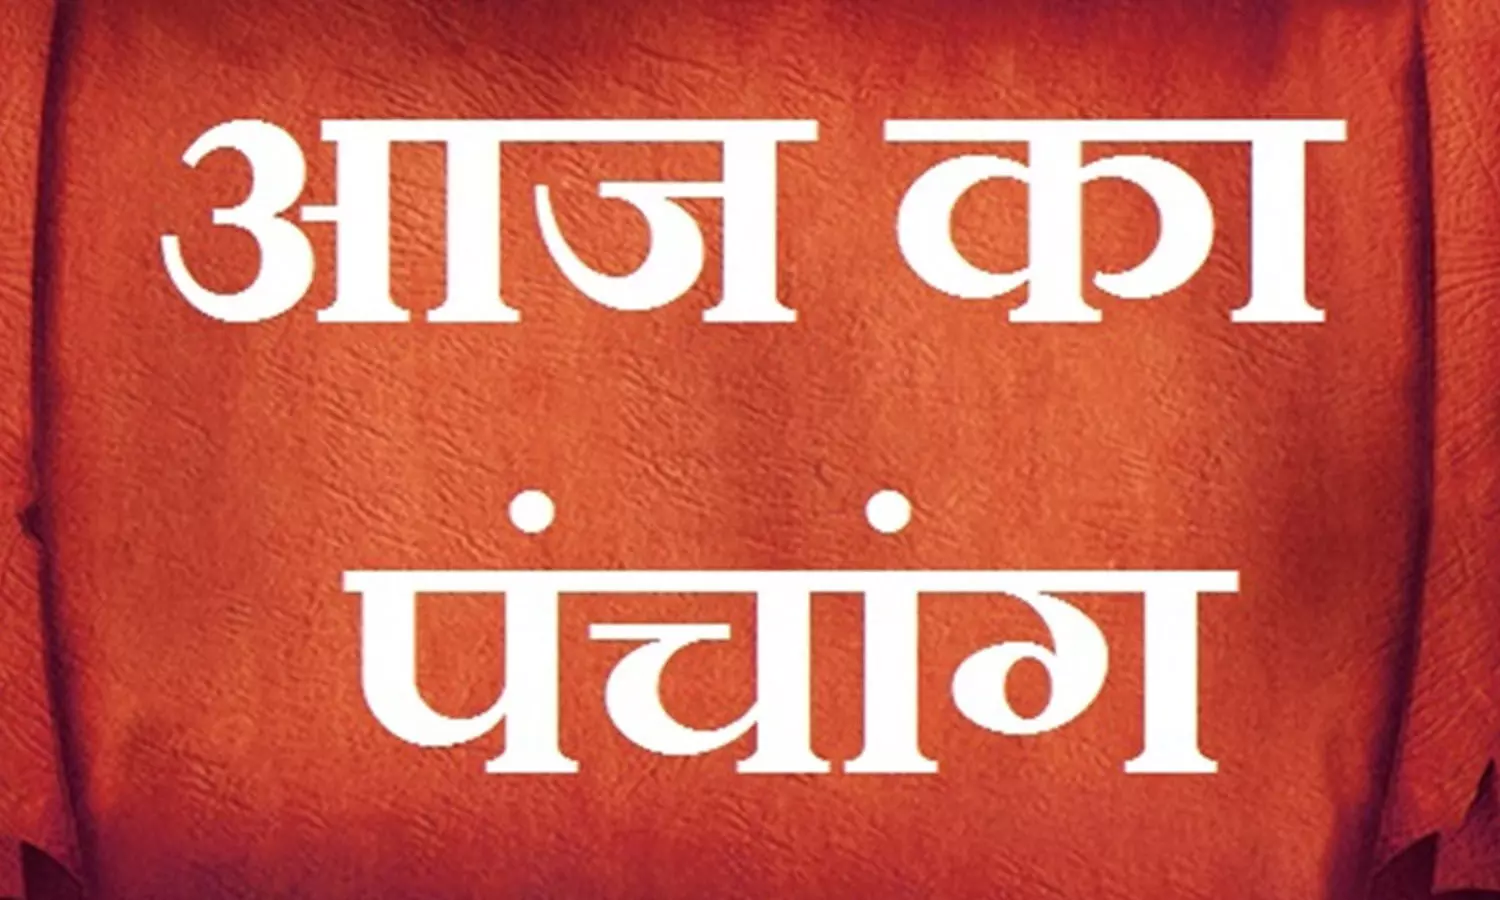 27 February 2023 Ka Panchang Tithi in Hindi : आज का पंचांग, देखिए शुभ संयोग, चौघड़िया और राहुकाल